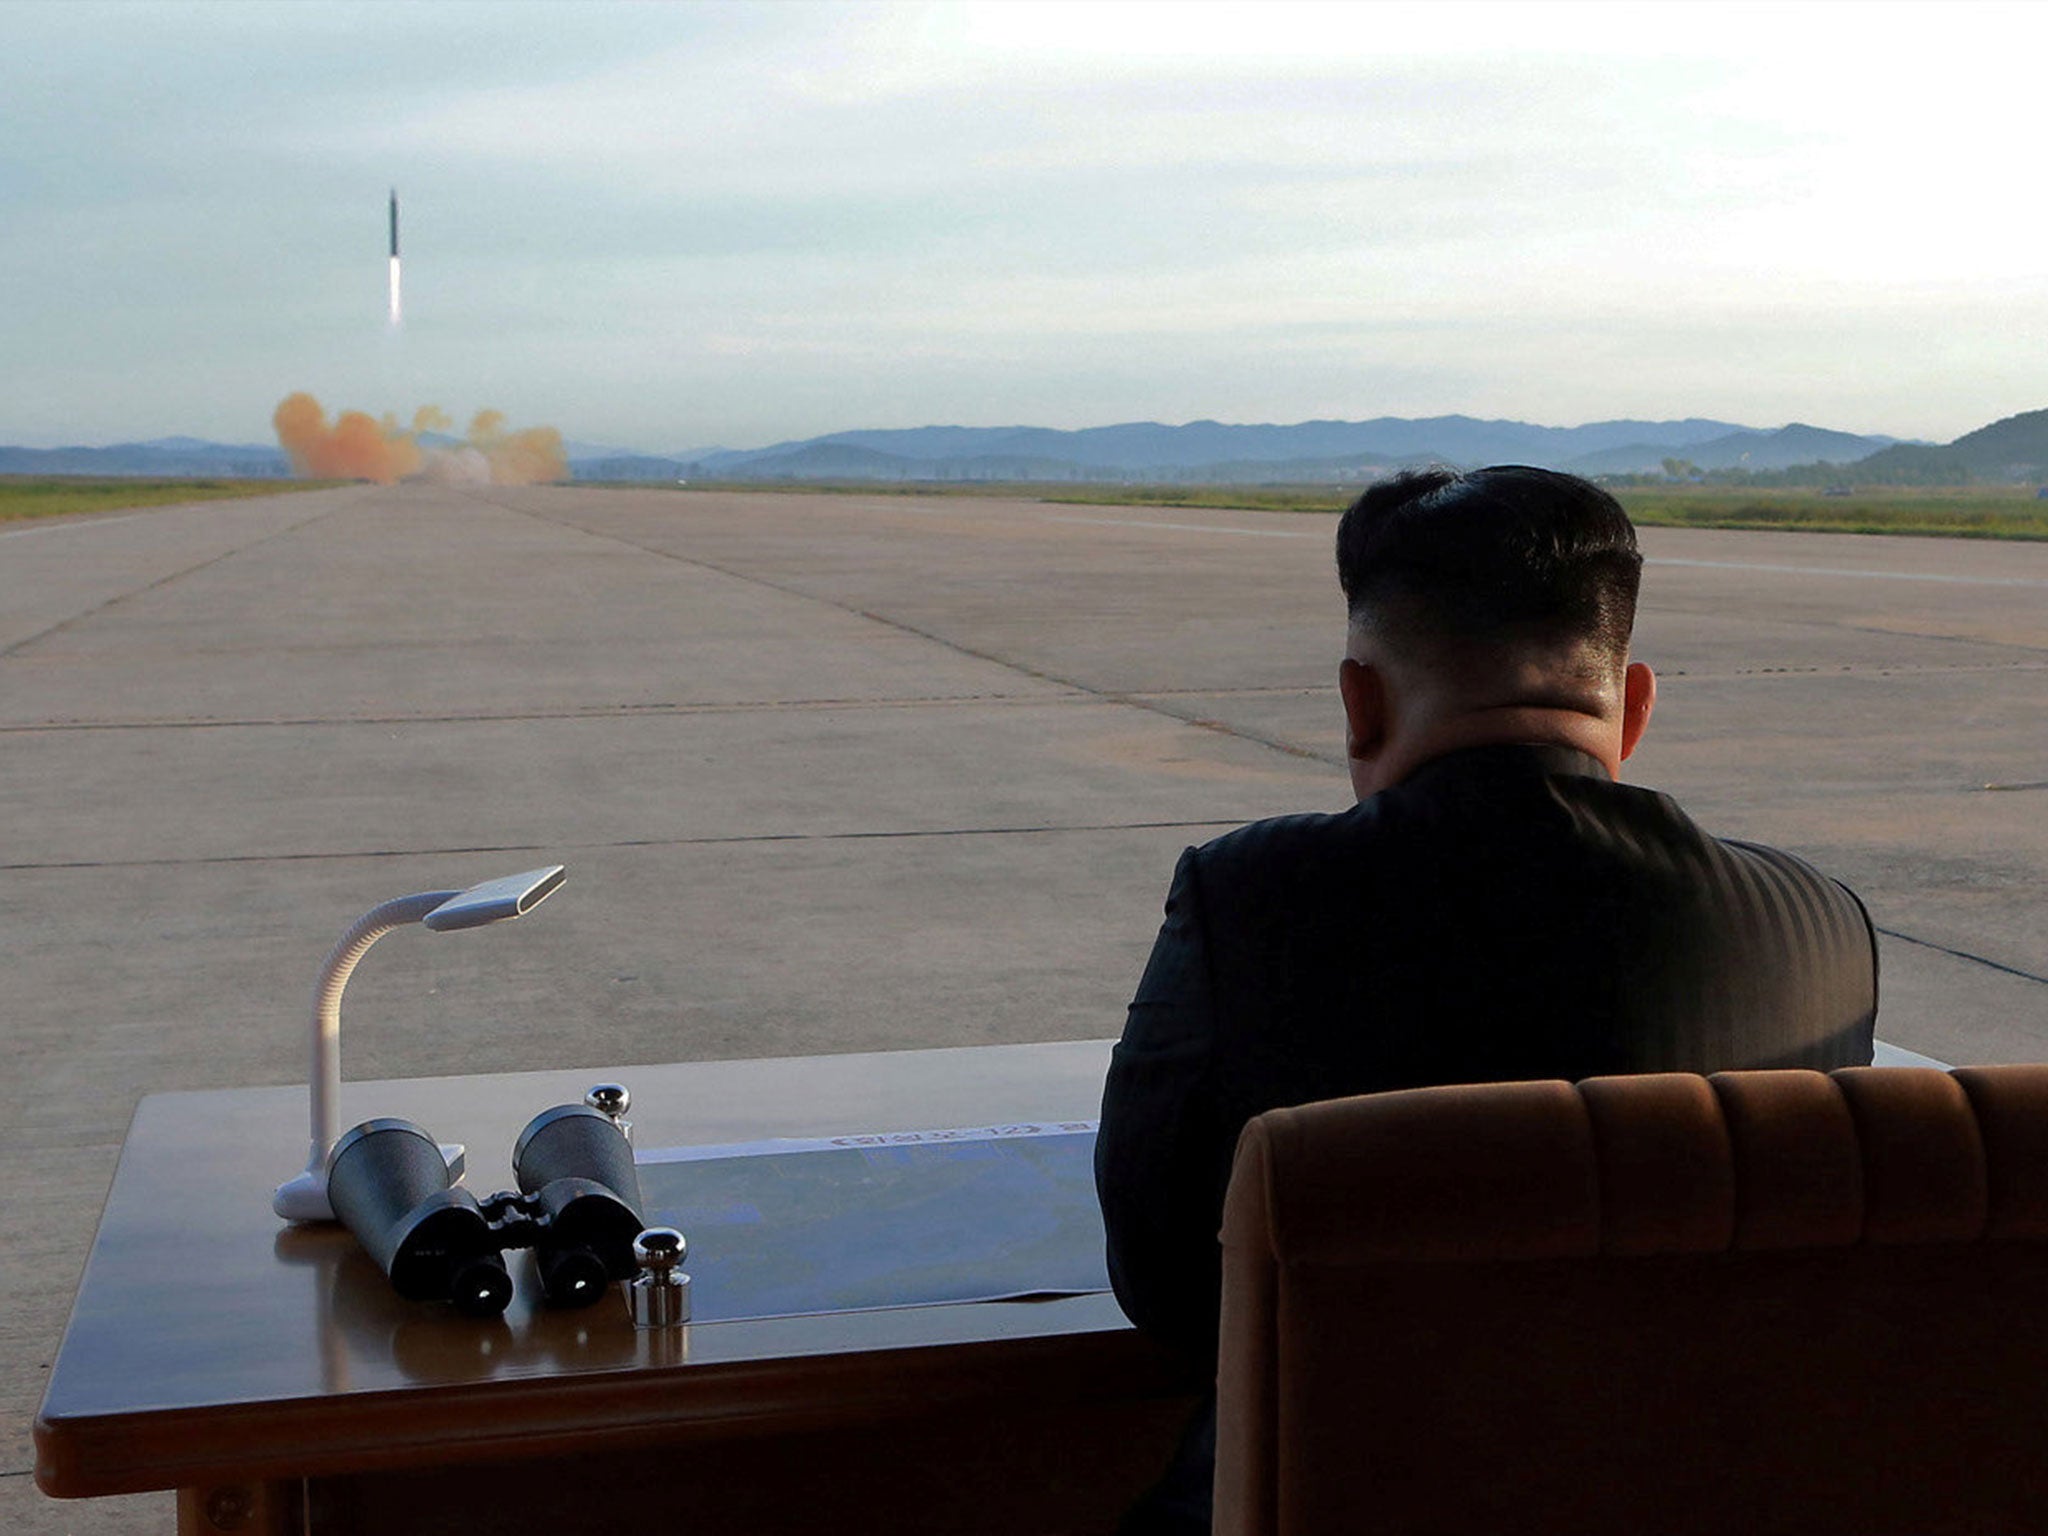 Kim Jong-un observes a missile launch